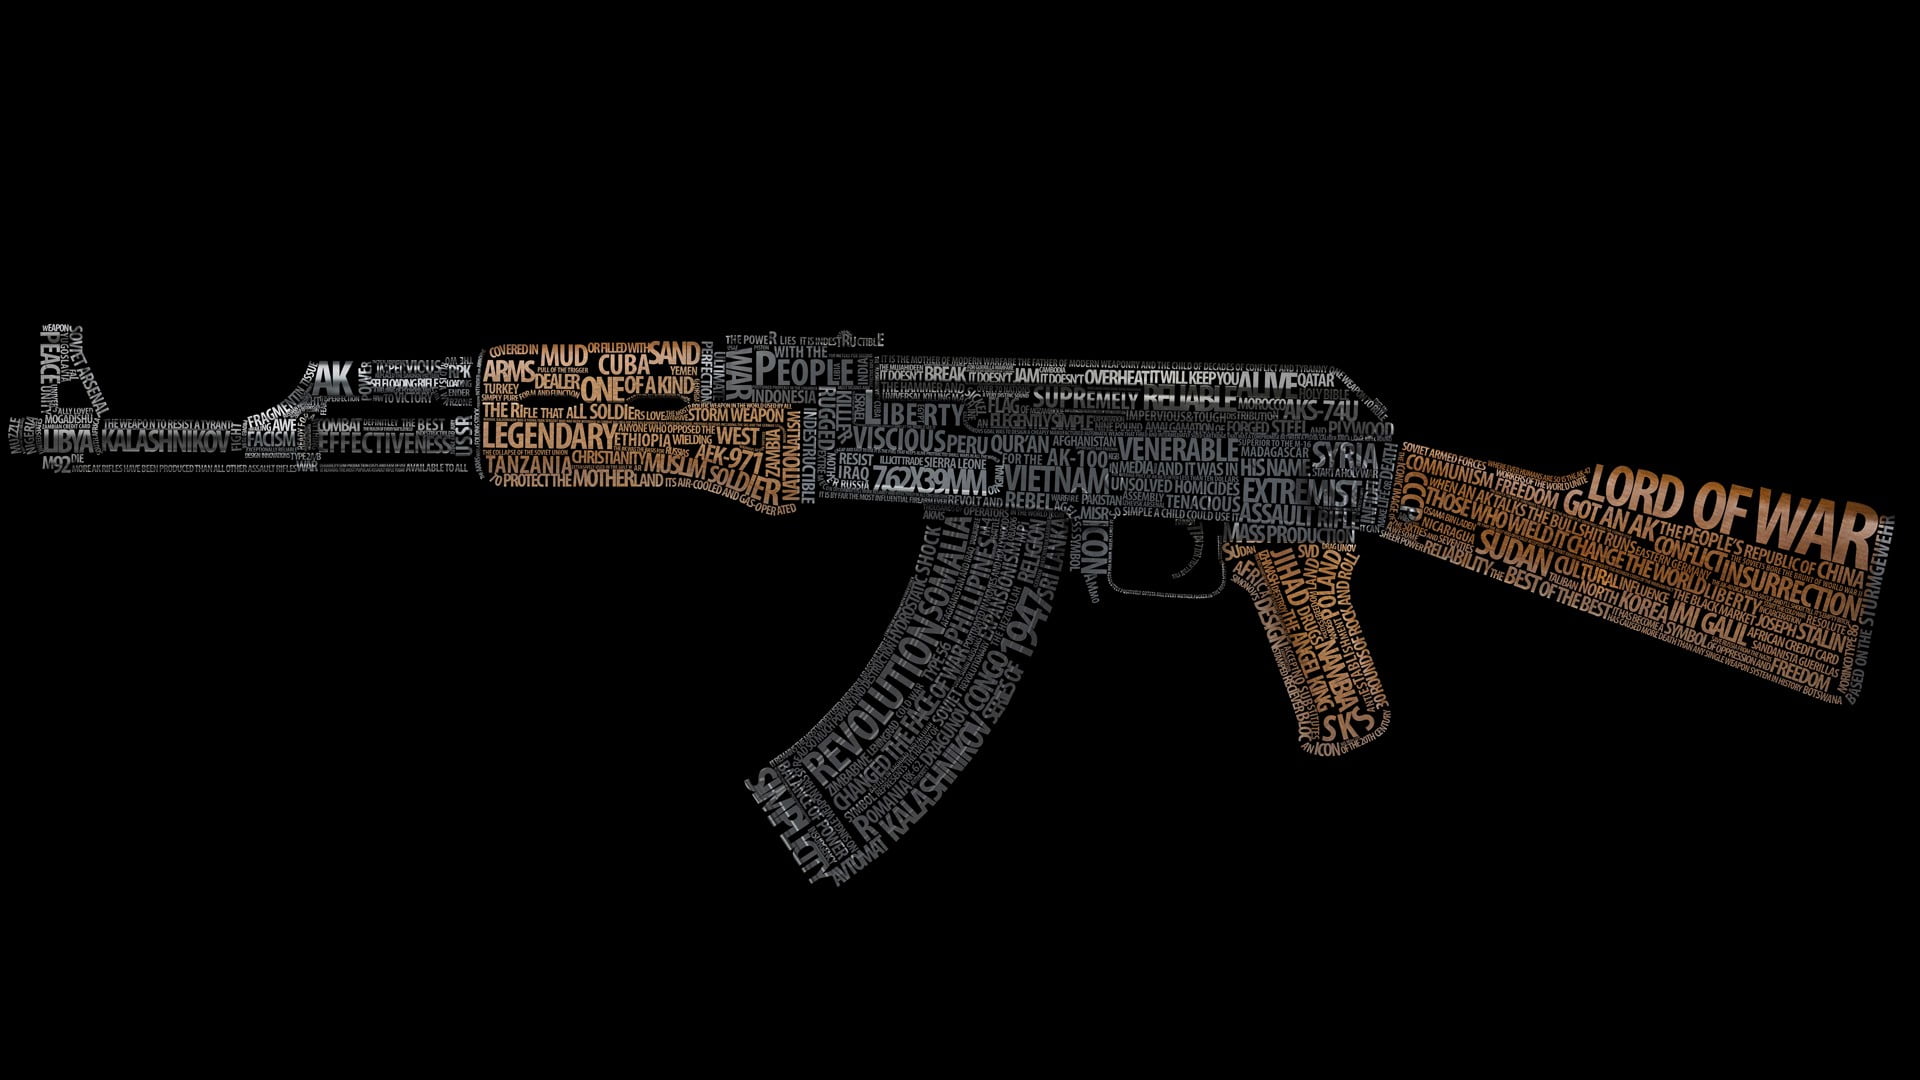 AK-47 word cloud, kalashnikov, text, weapon, typography, black background